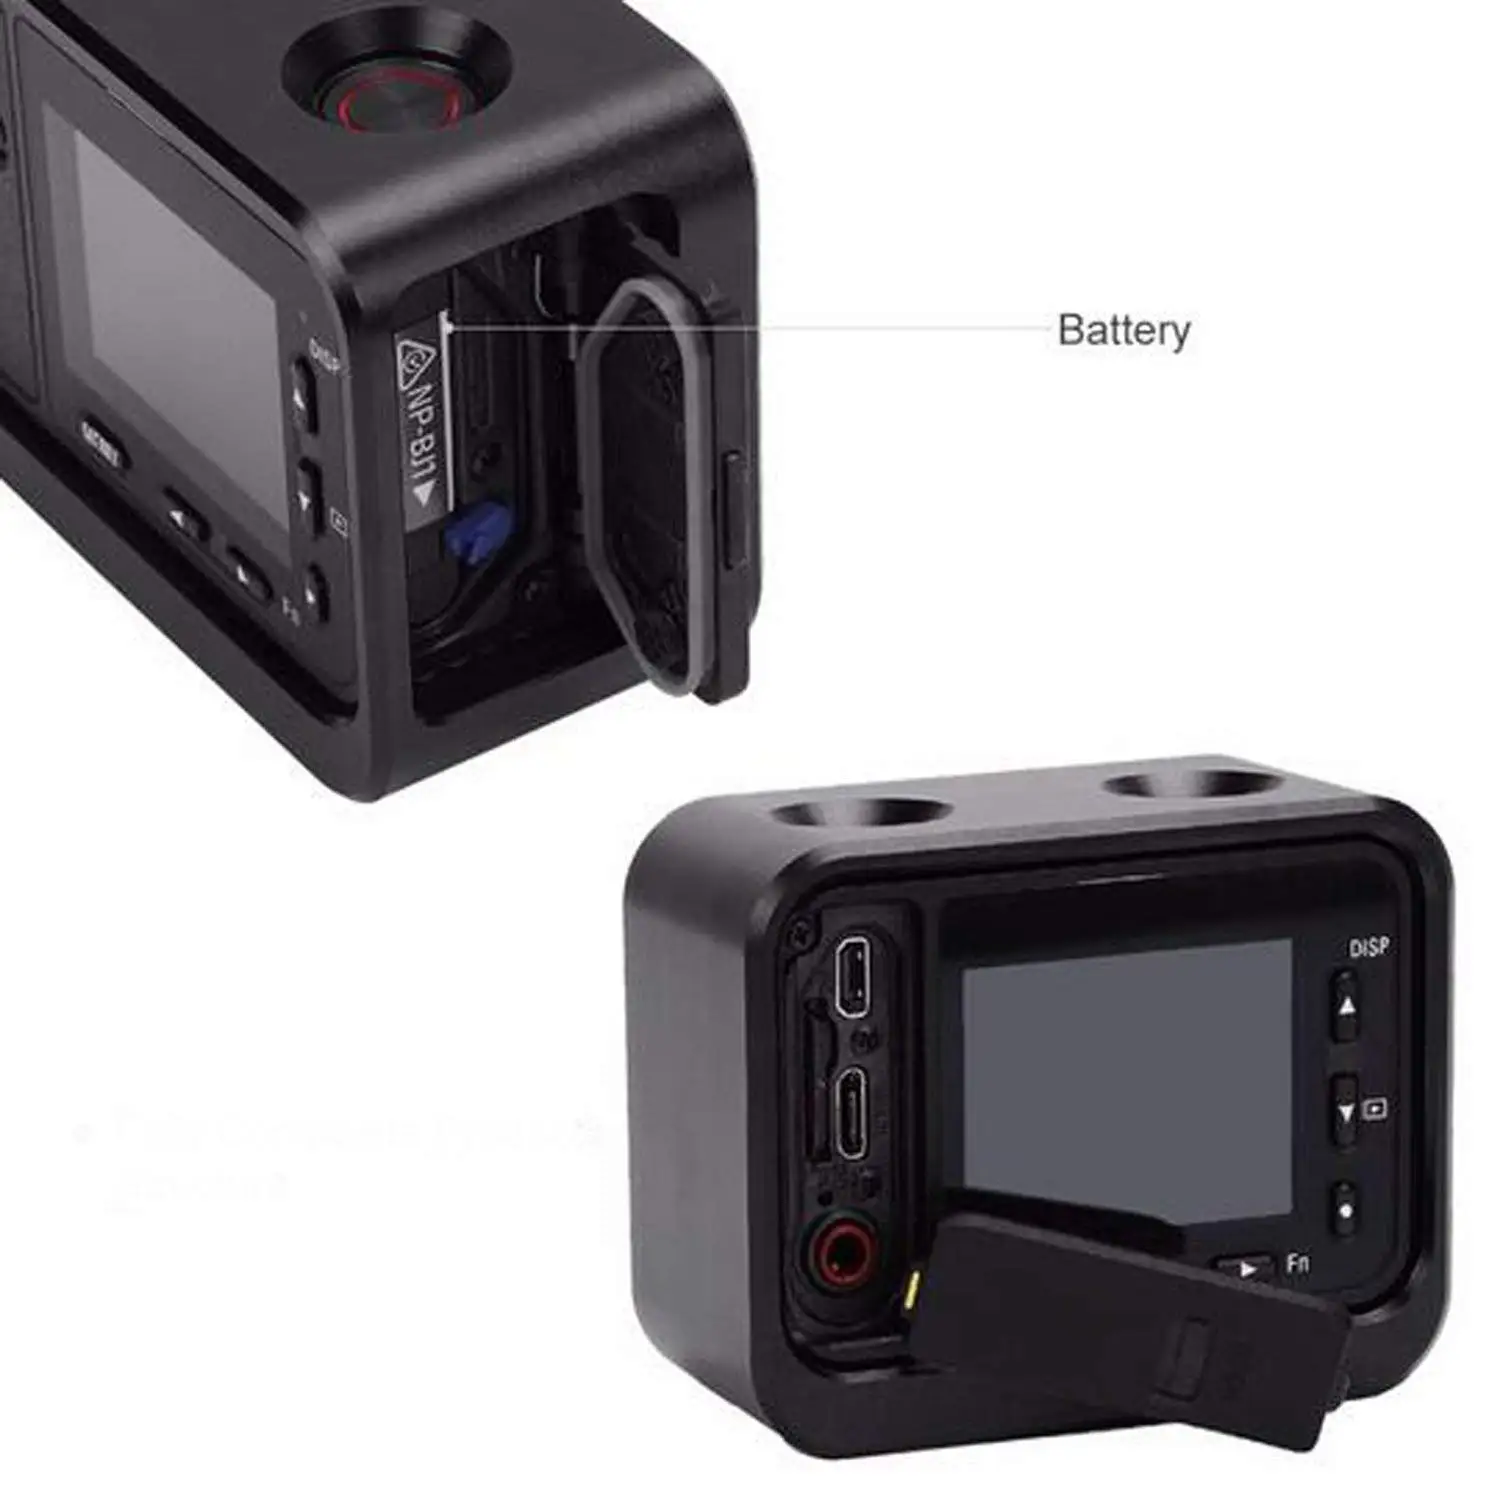 ELOS-камера металлический чехол, комплект для sony RX0 корпус оболочка алюминиевый сплав защитный чехол клетка+ 37 мм УФ фильтр объектив+ объектив солнцезащитный козырек w